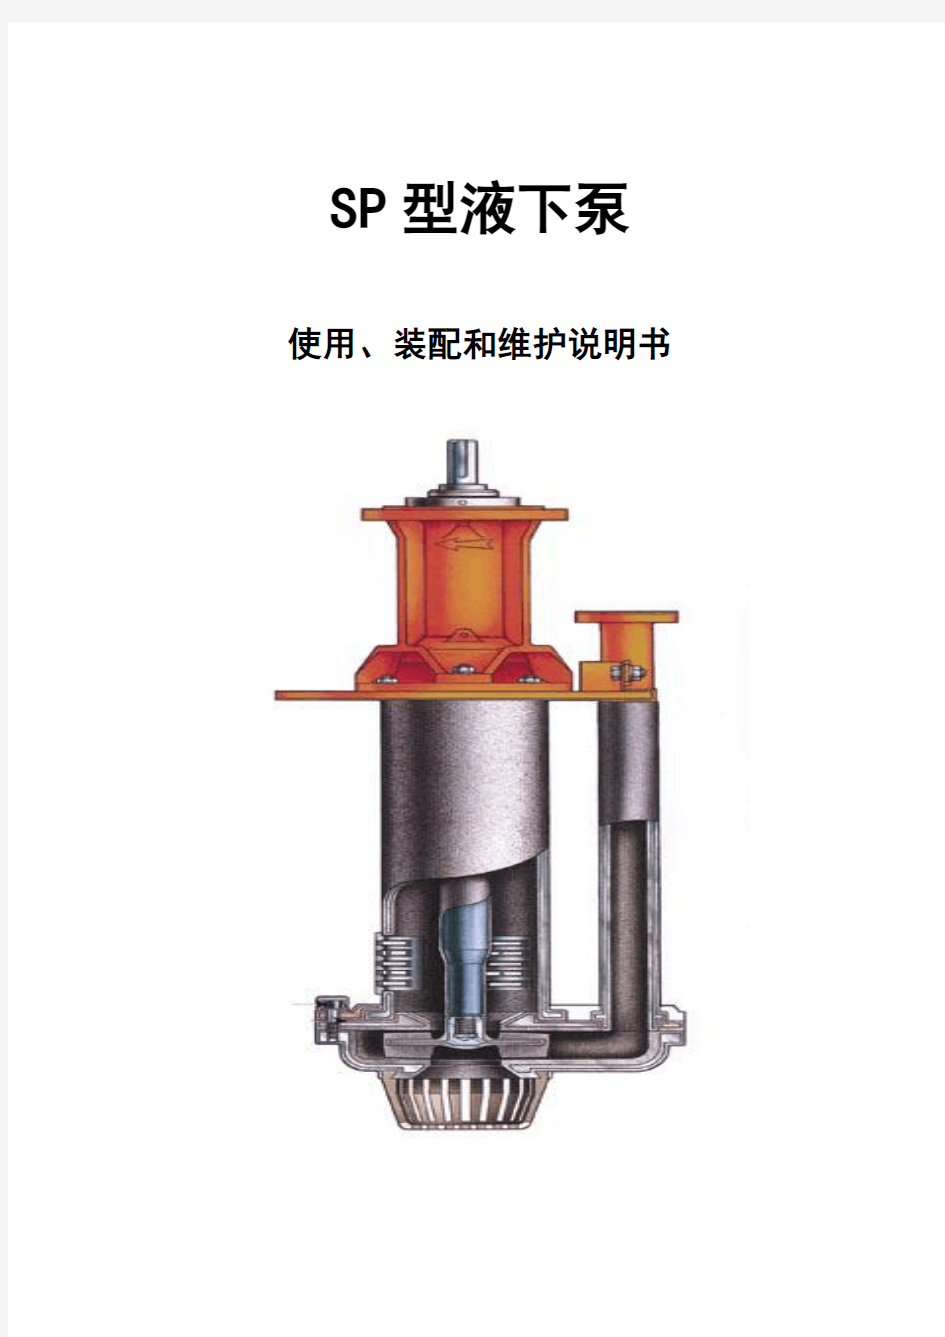 SP、SPR型液下渣浆泵说明书资料